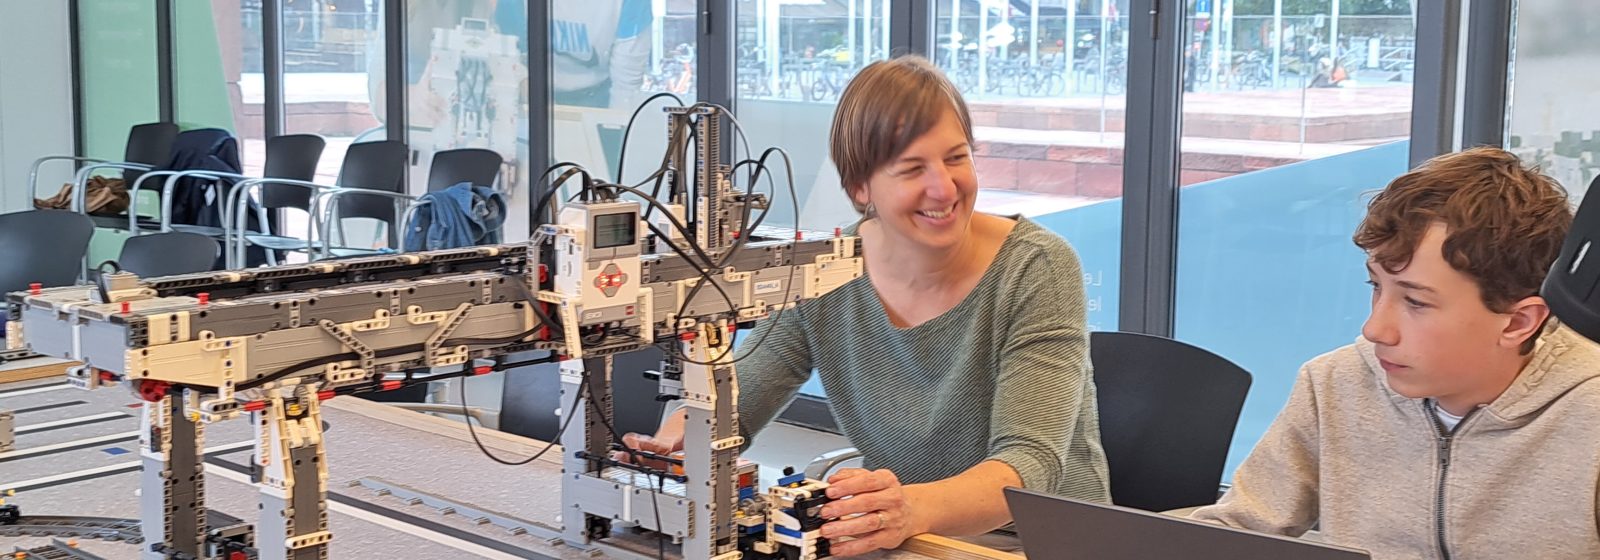 Leerkracht programmeert robots samen met een leerling.